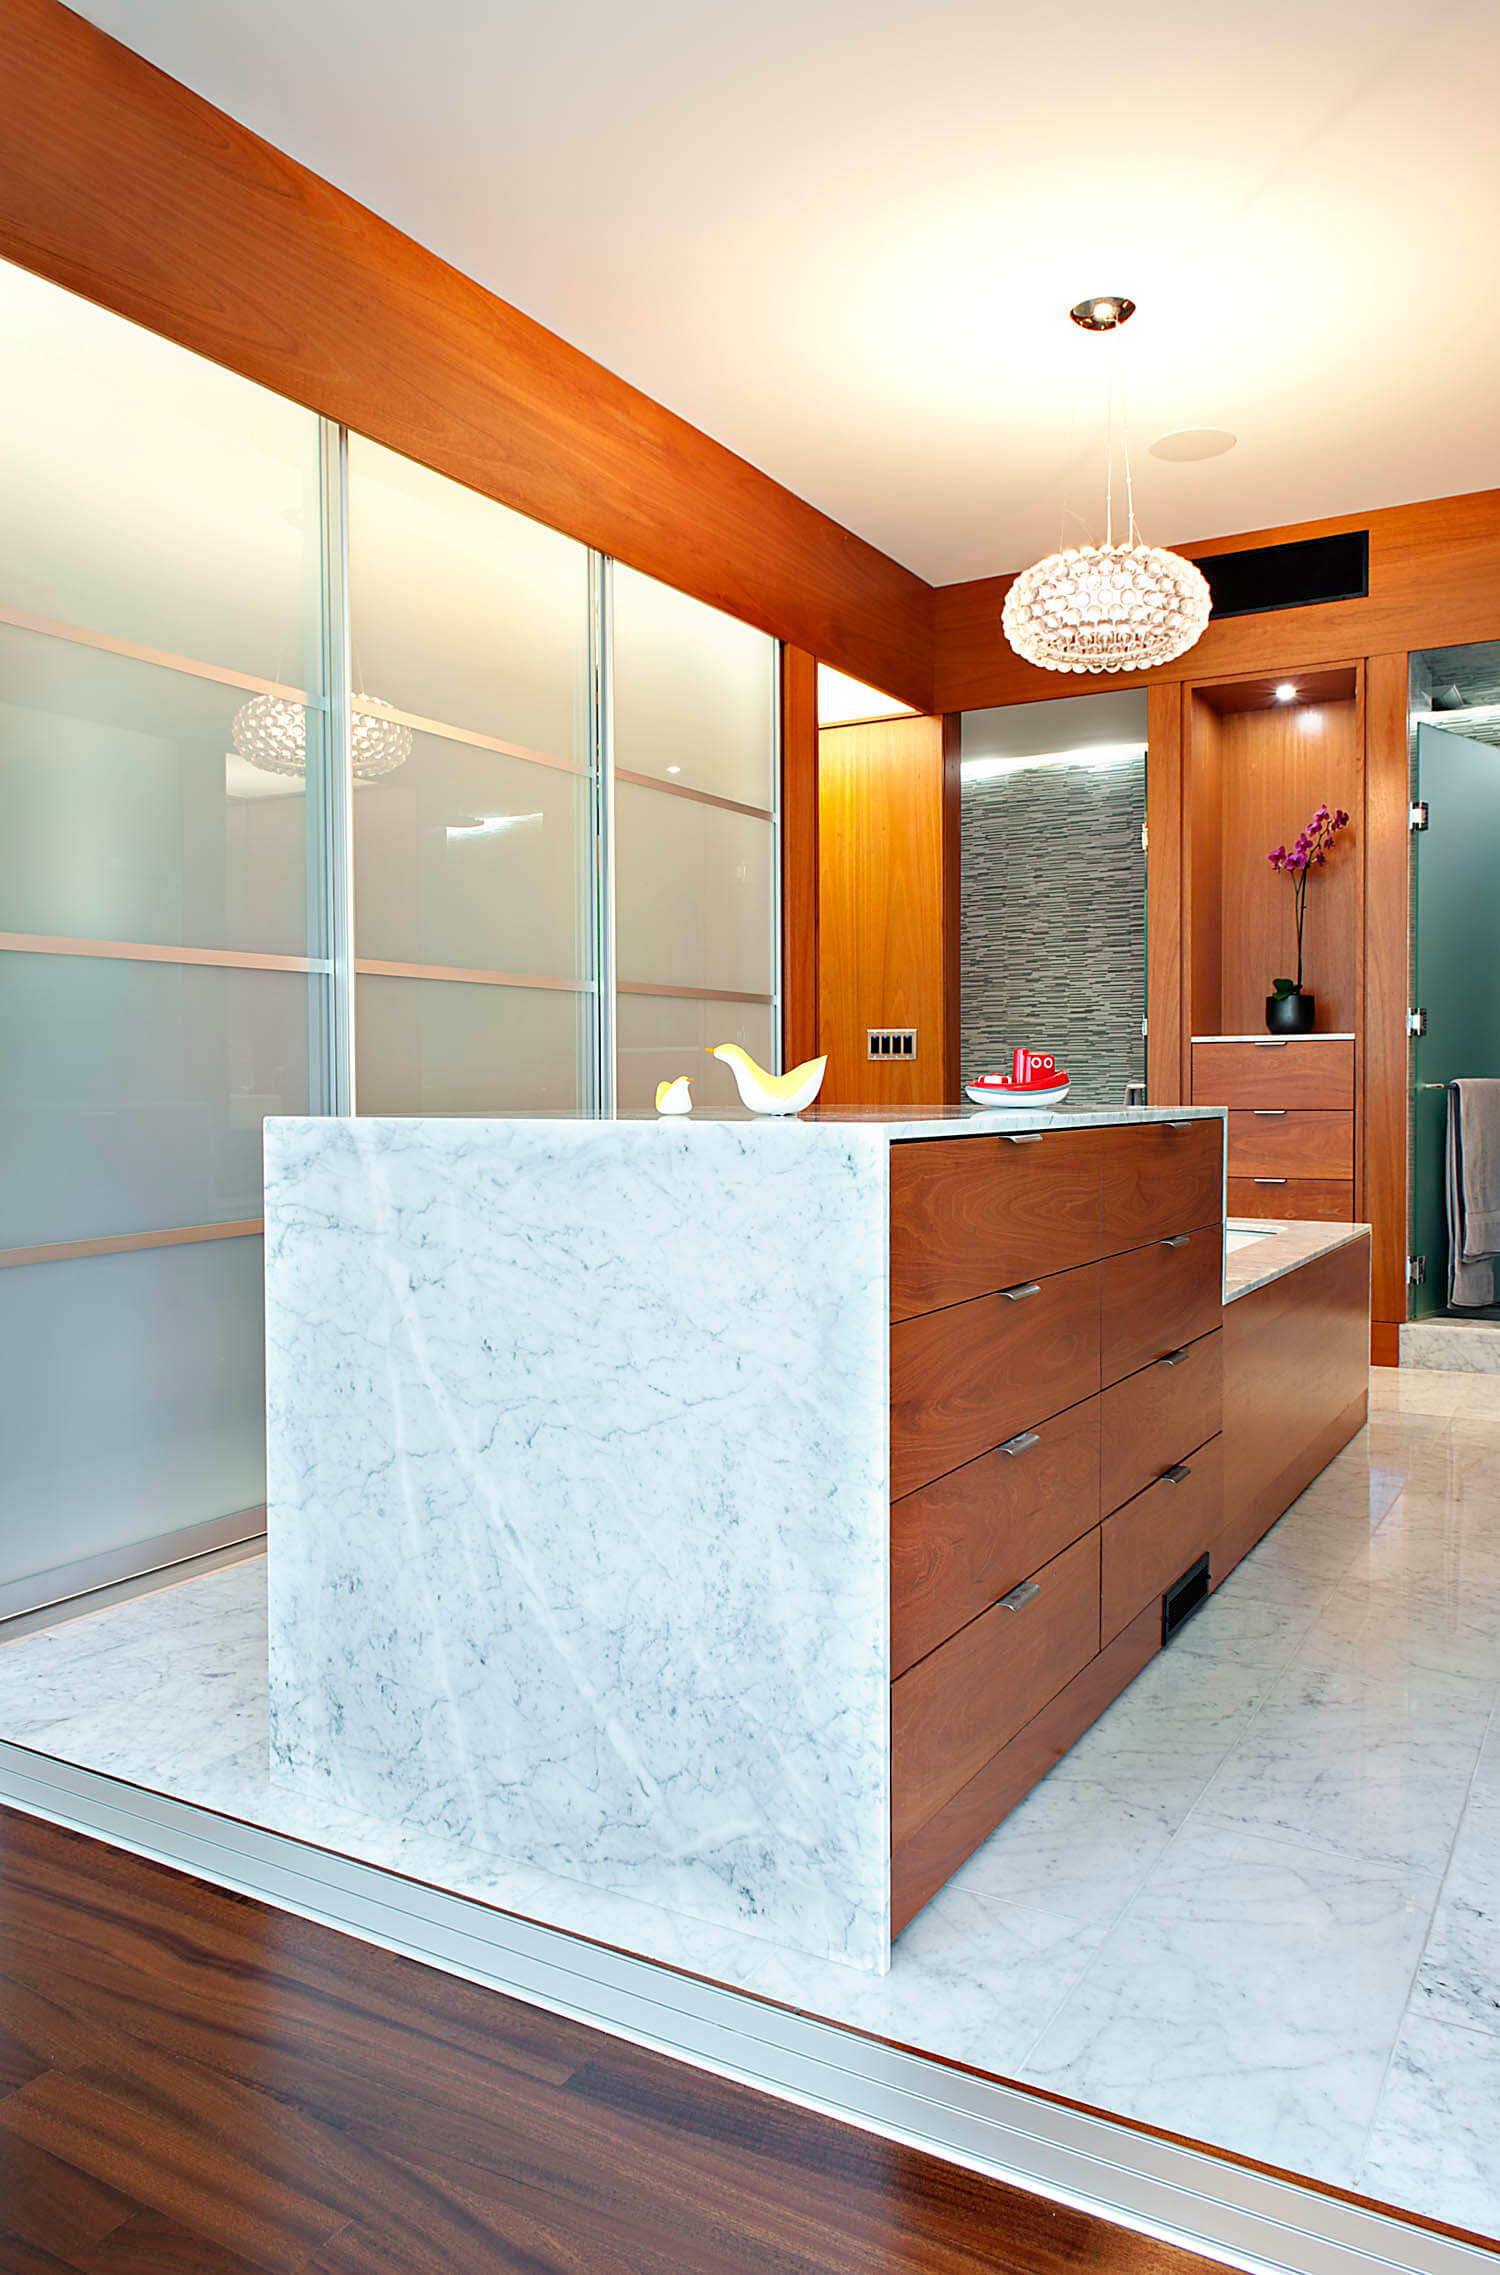 浴室的远景，突出了大理石地板和浴缸的环绕，配有嵌入式木抽屉存储。烟熏玻璃隐私墙的功能在左边。